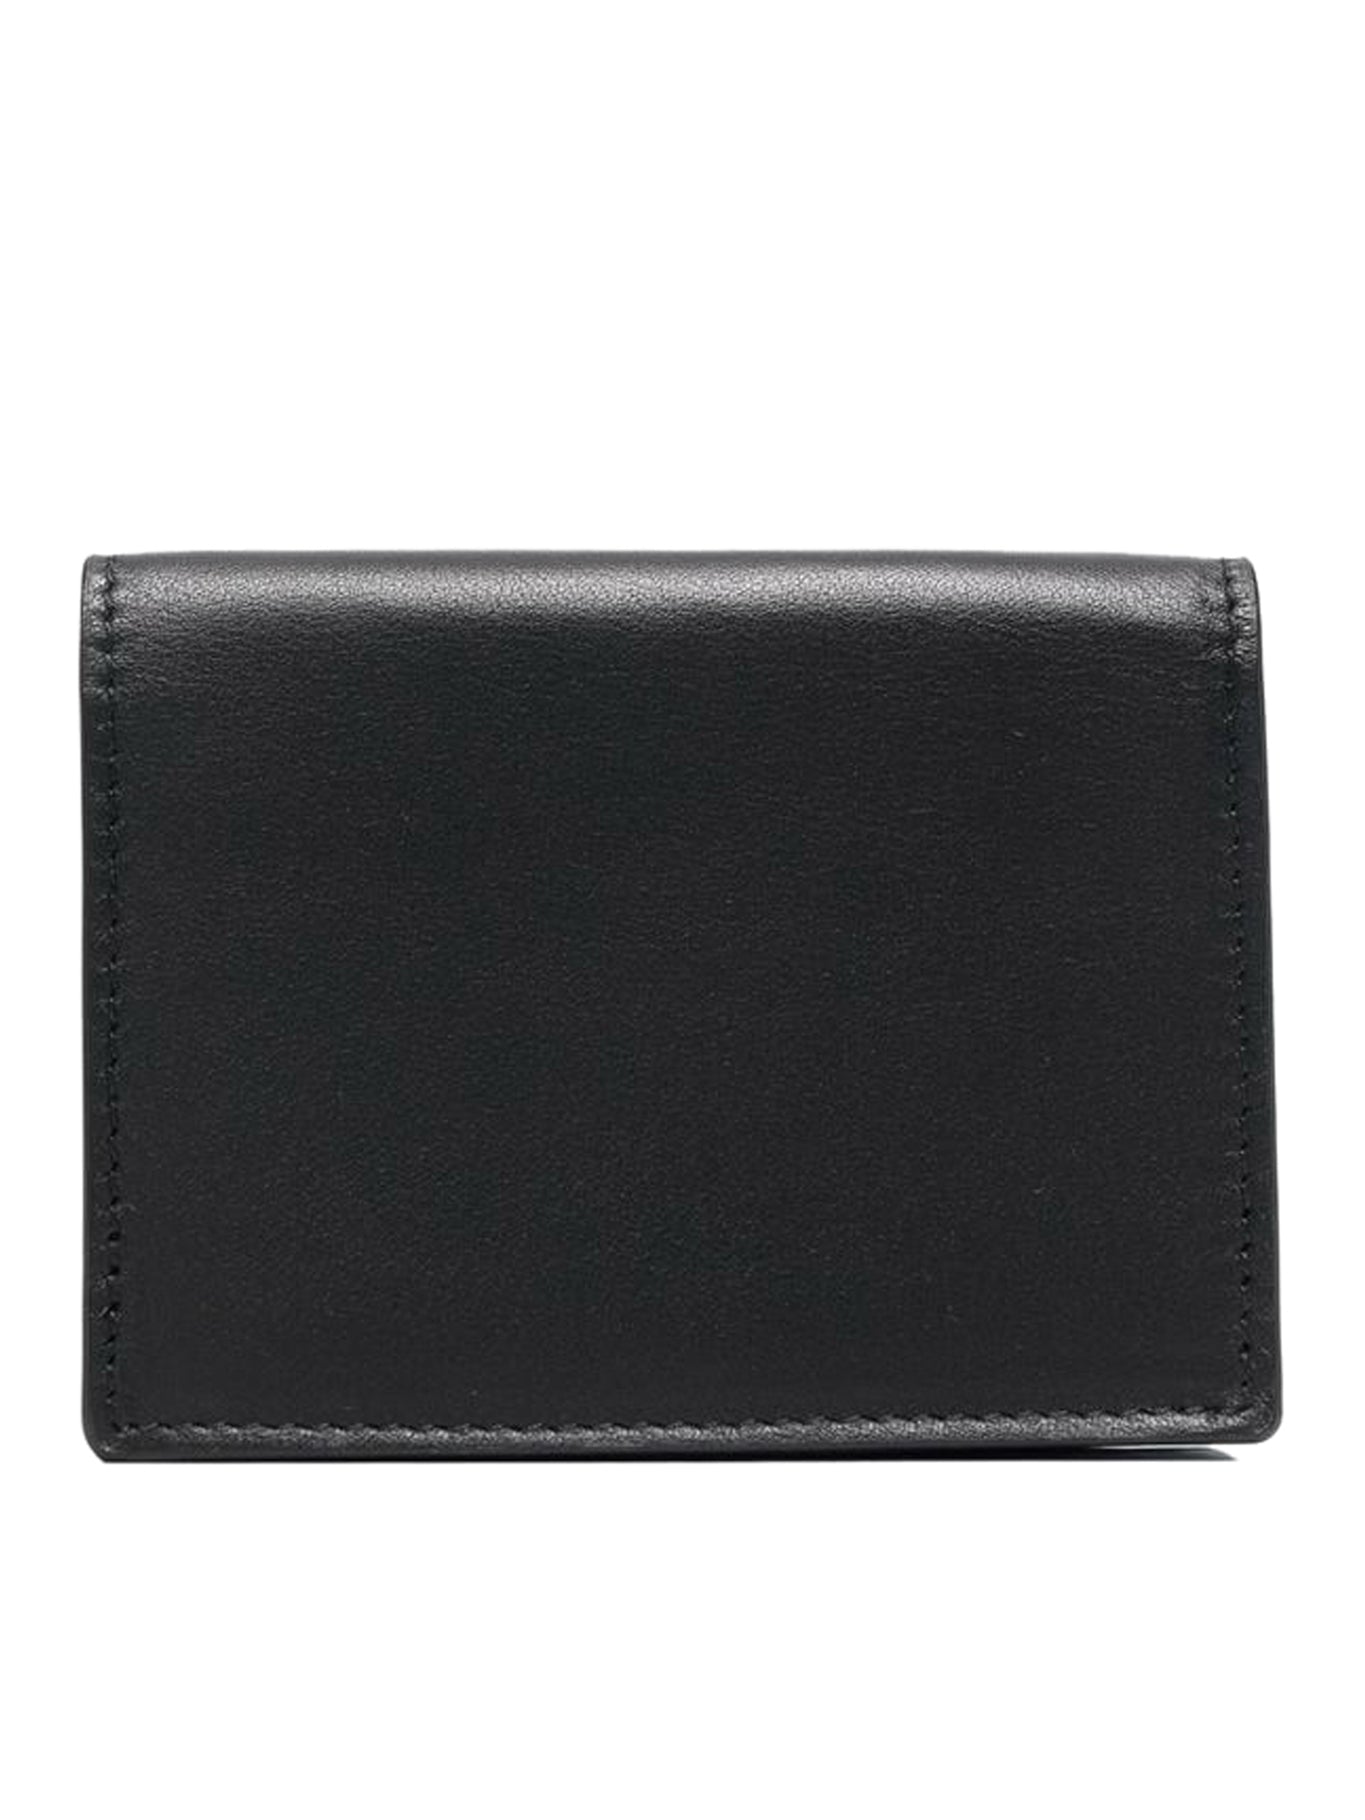 Medusa leather wallet